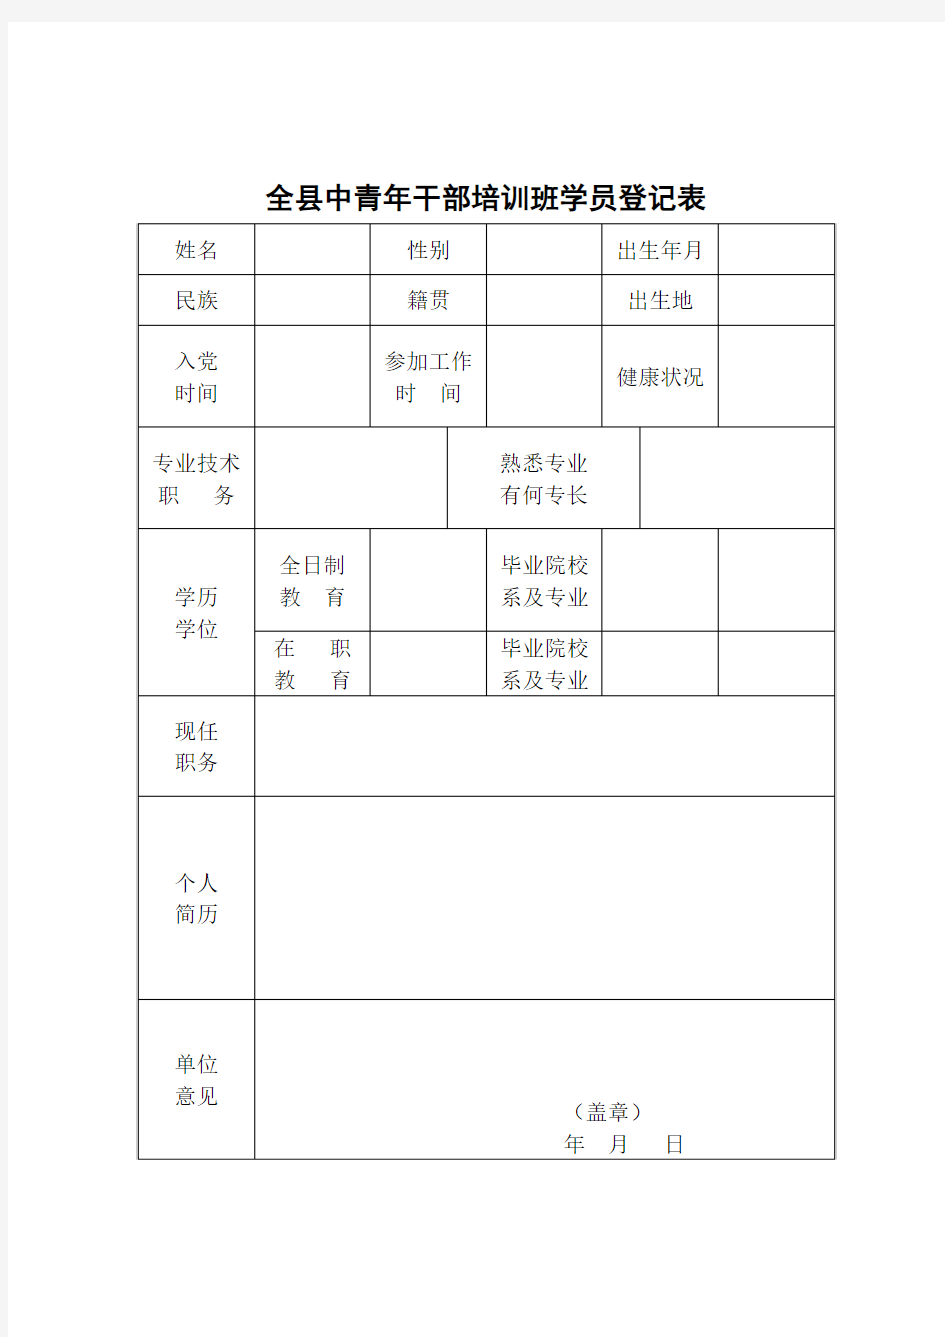 中青年干部培训班学员登记表(模板)